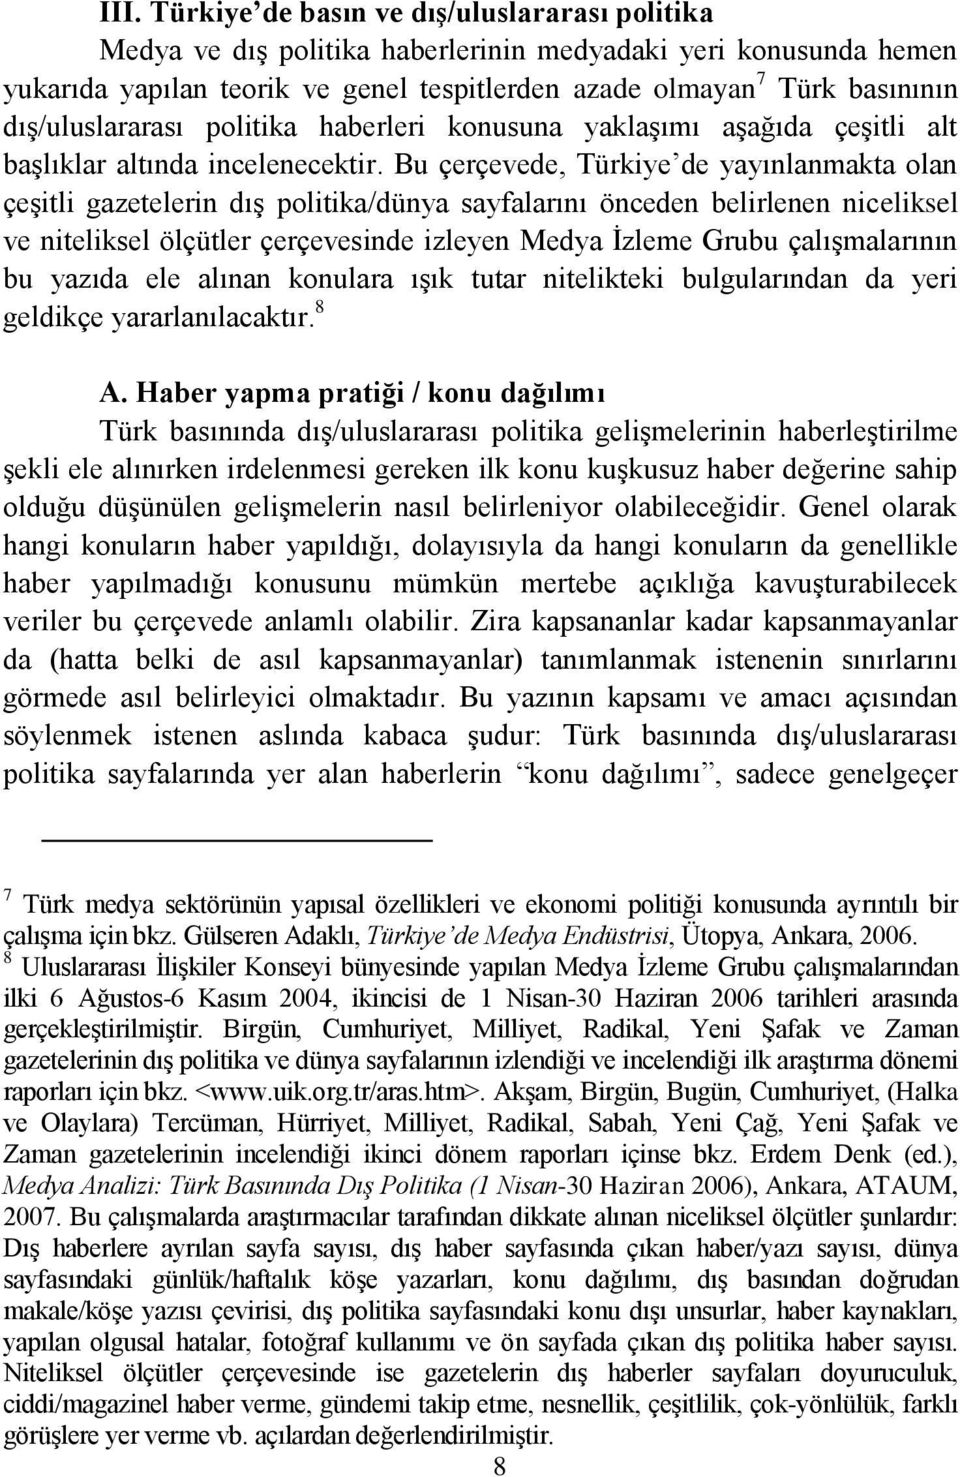 Bu çerçevede, Türkiye de yayınlanmakta olan çeģitli gazetelerin dıģ politika/dünya sayfalarını önceden belirlenen niceliksel ve niteliksel ölçütler çerçevesinde izleyen Medya Ġzleme Grubu